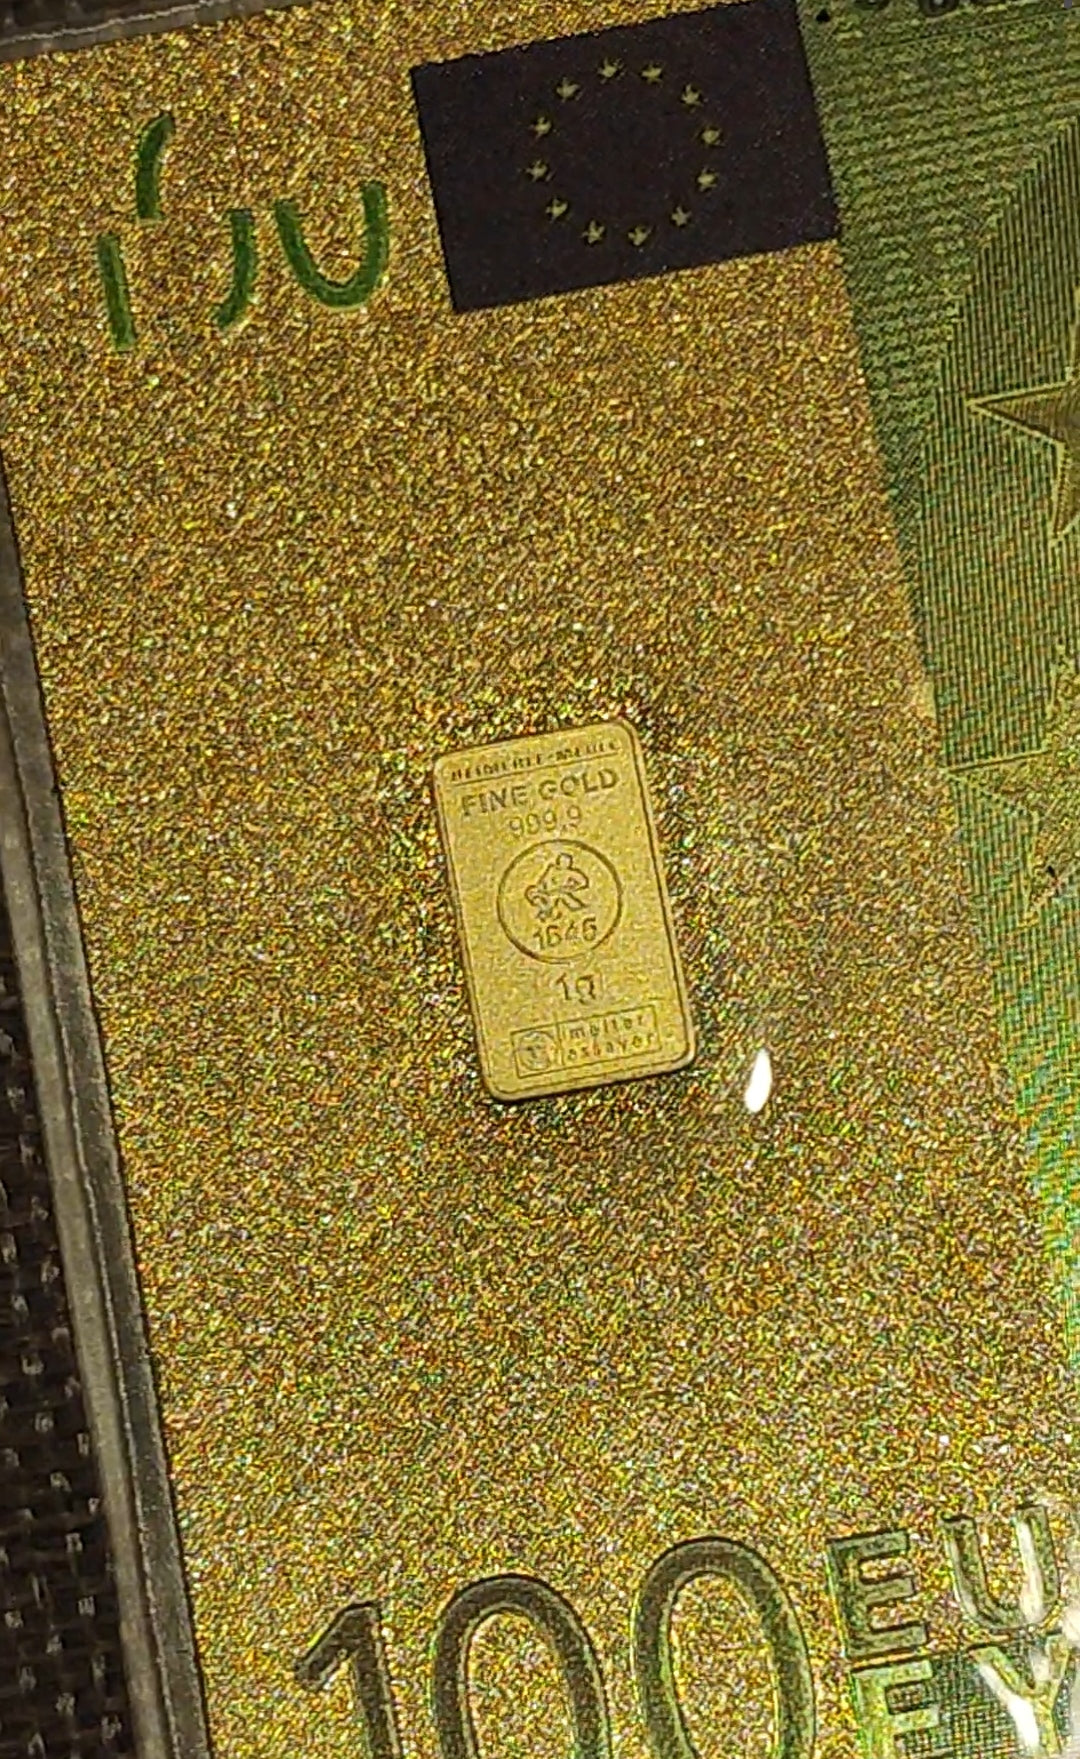 Billet 100 euros doré collector avec 1g d'or fin